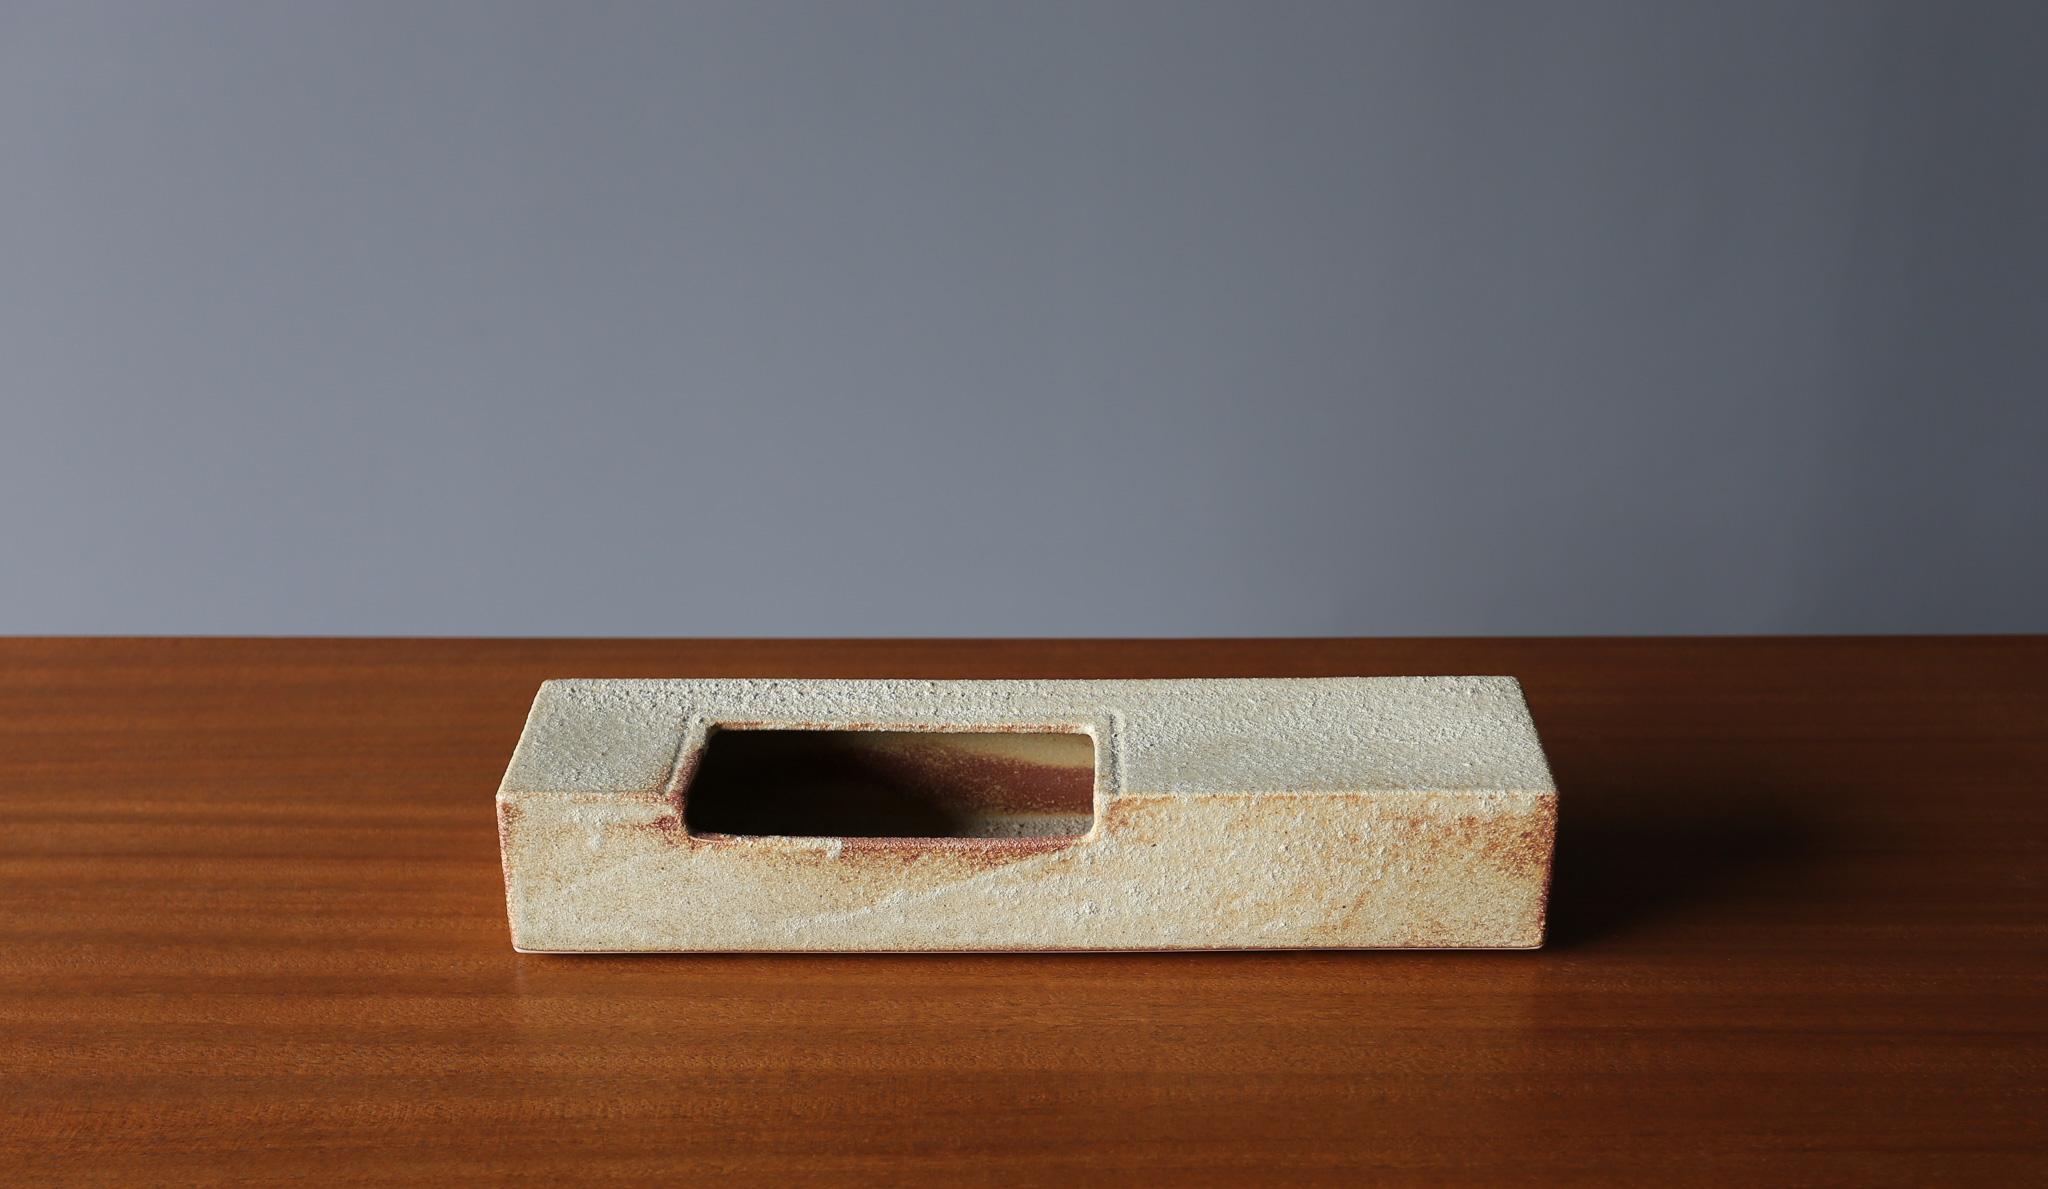 TOYO Modernistische Ikebana-Keramikvase, Japan, um 1960.  Das originale TOYO Label befindet sich auf der Unterseite.  